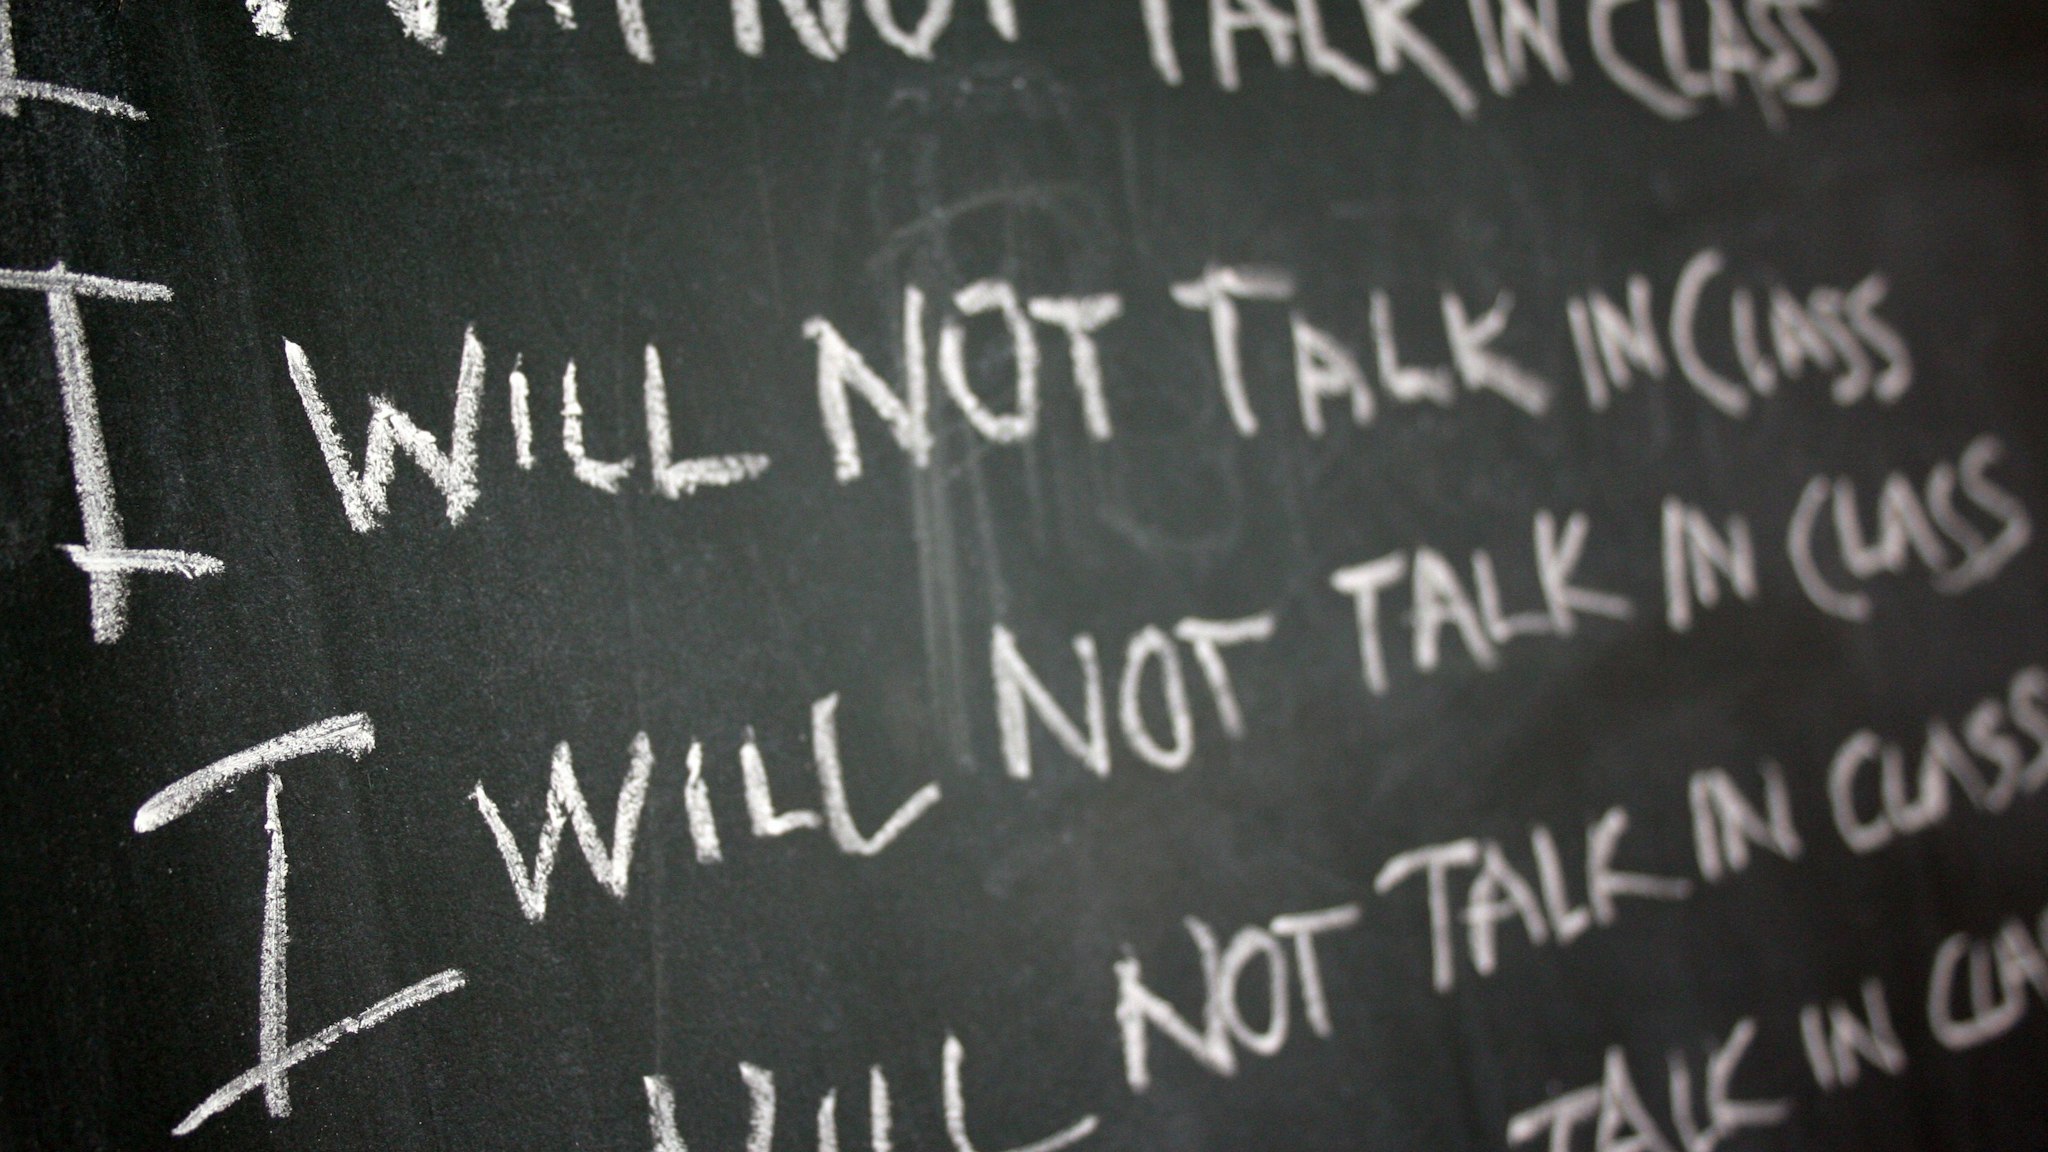 Chalk board reading "I will not talk in class"